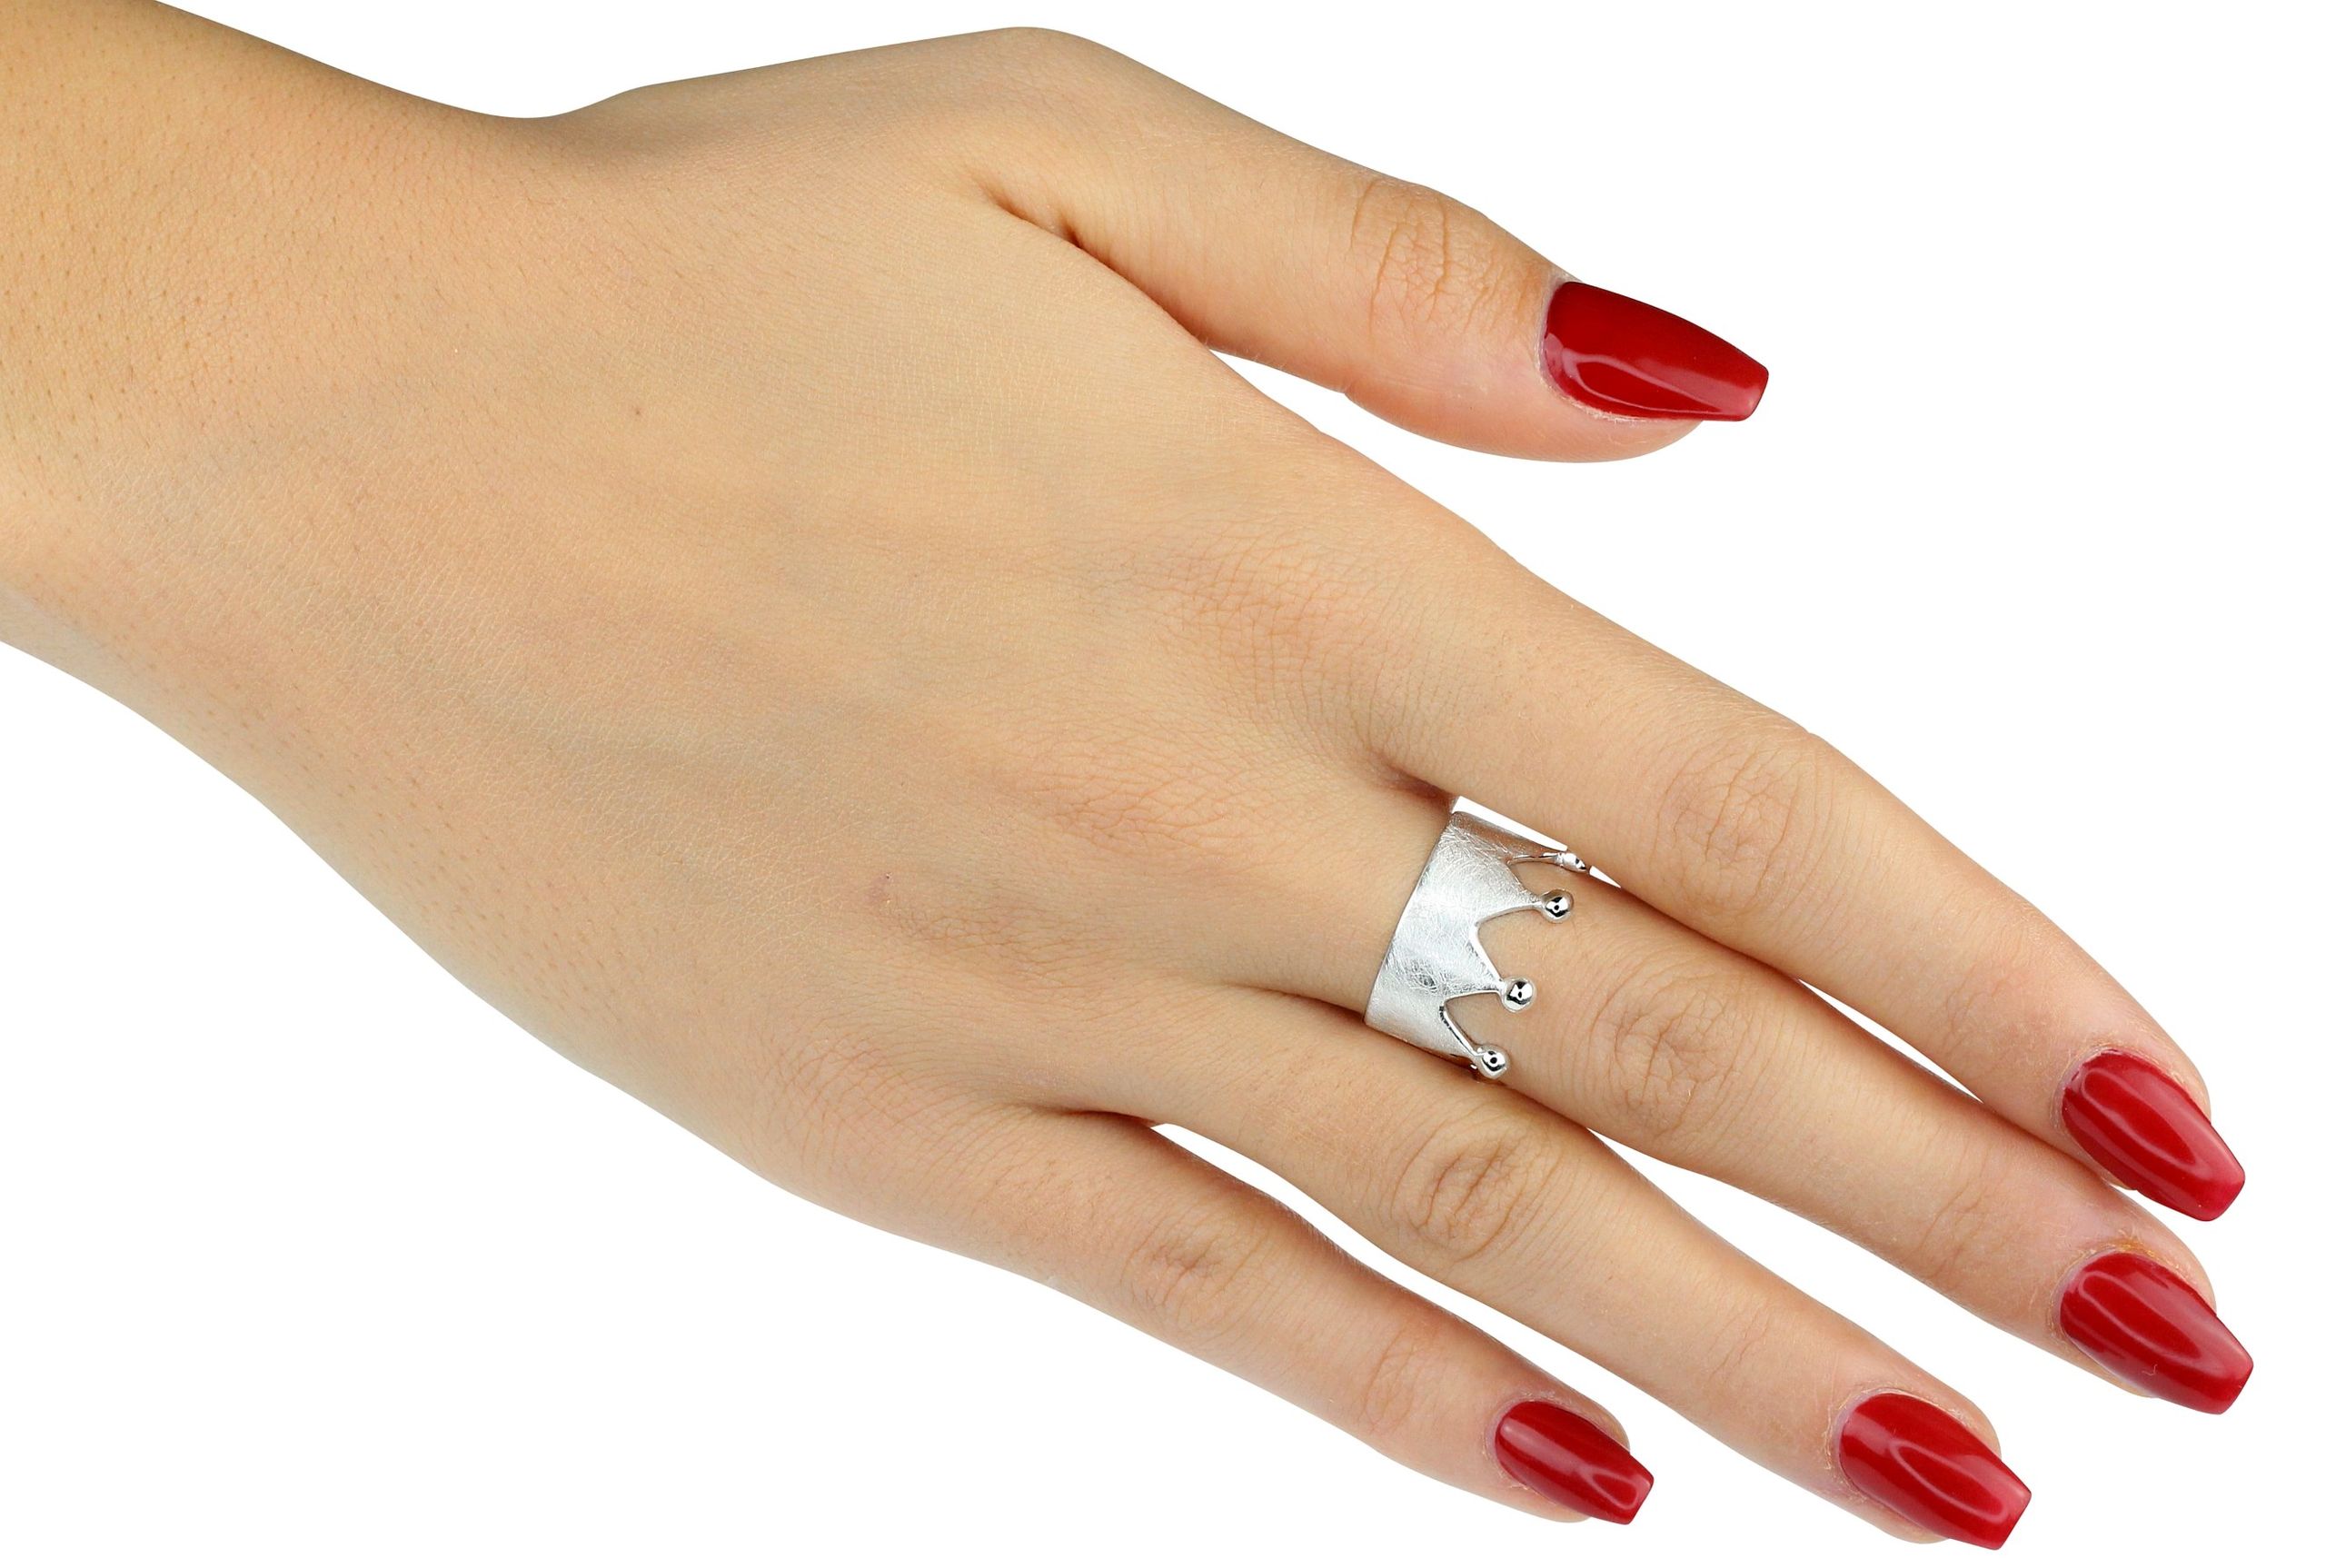 Silberner Kronenring mit acht Zacken. Der Ring ist innen glänzend und außen gebürstet. 